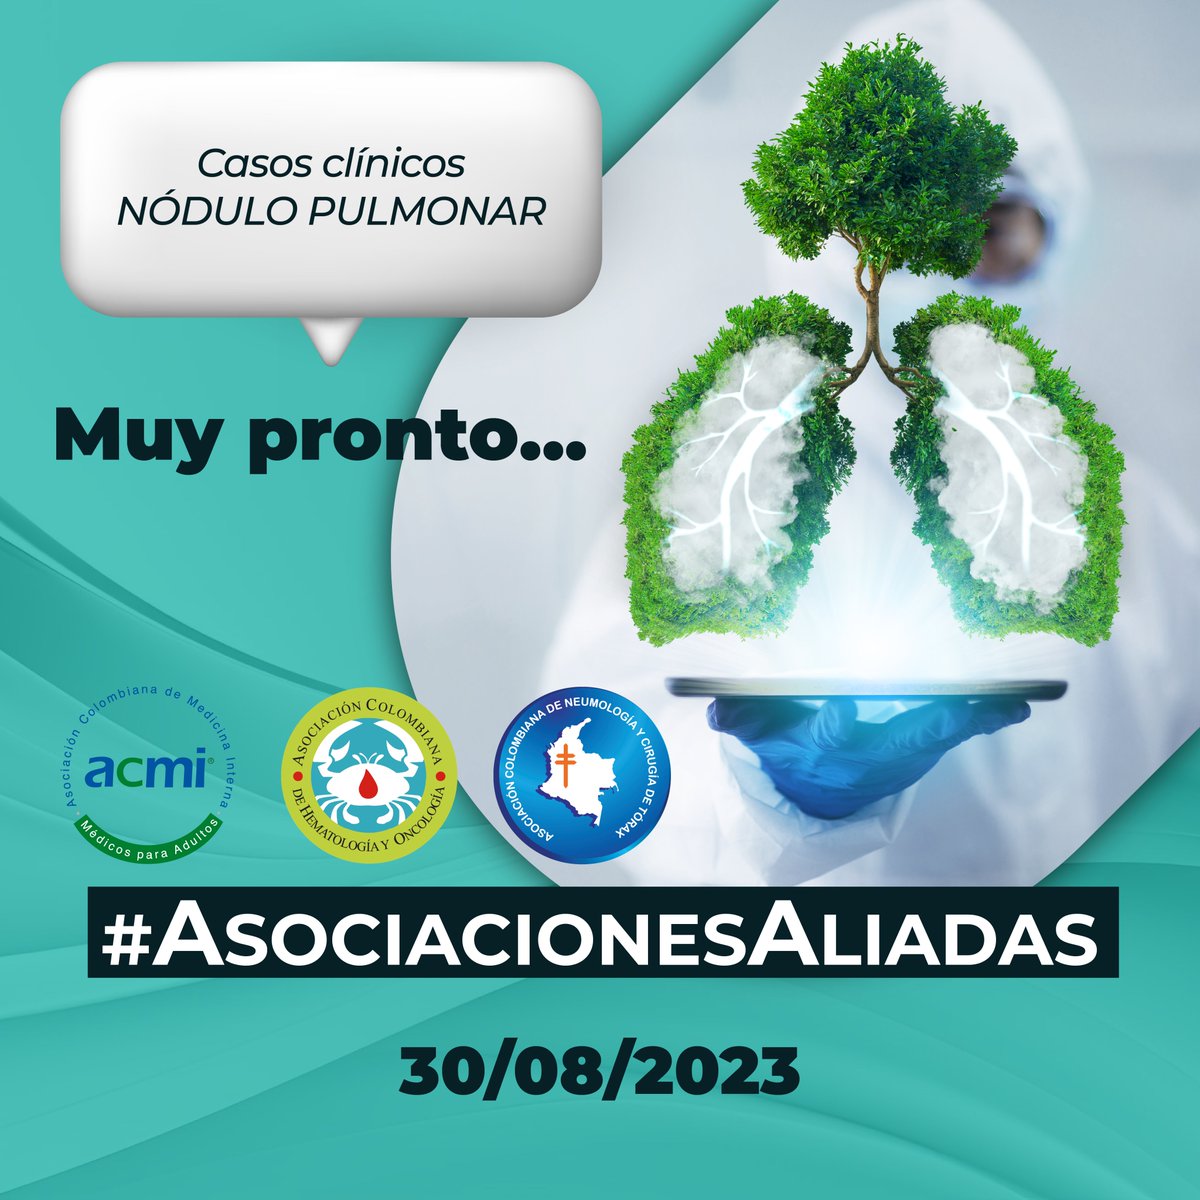 #AsociacionesAliadas🤜🏽🤛🏽 🔜Casos clínicos - nódulo pulmonar 🔜 30/08/2023 🫁 @ACMI_COL @asoneumocito142